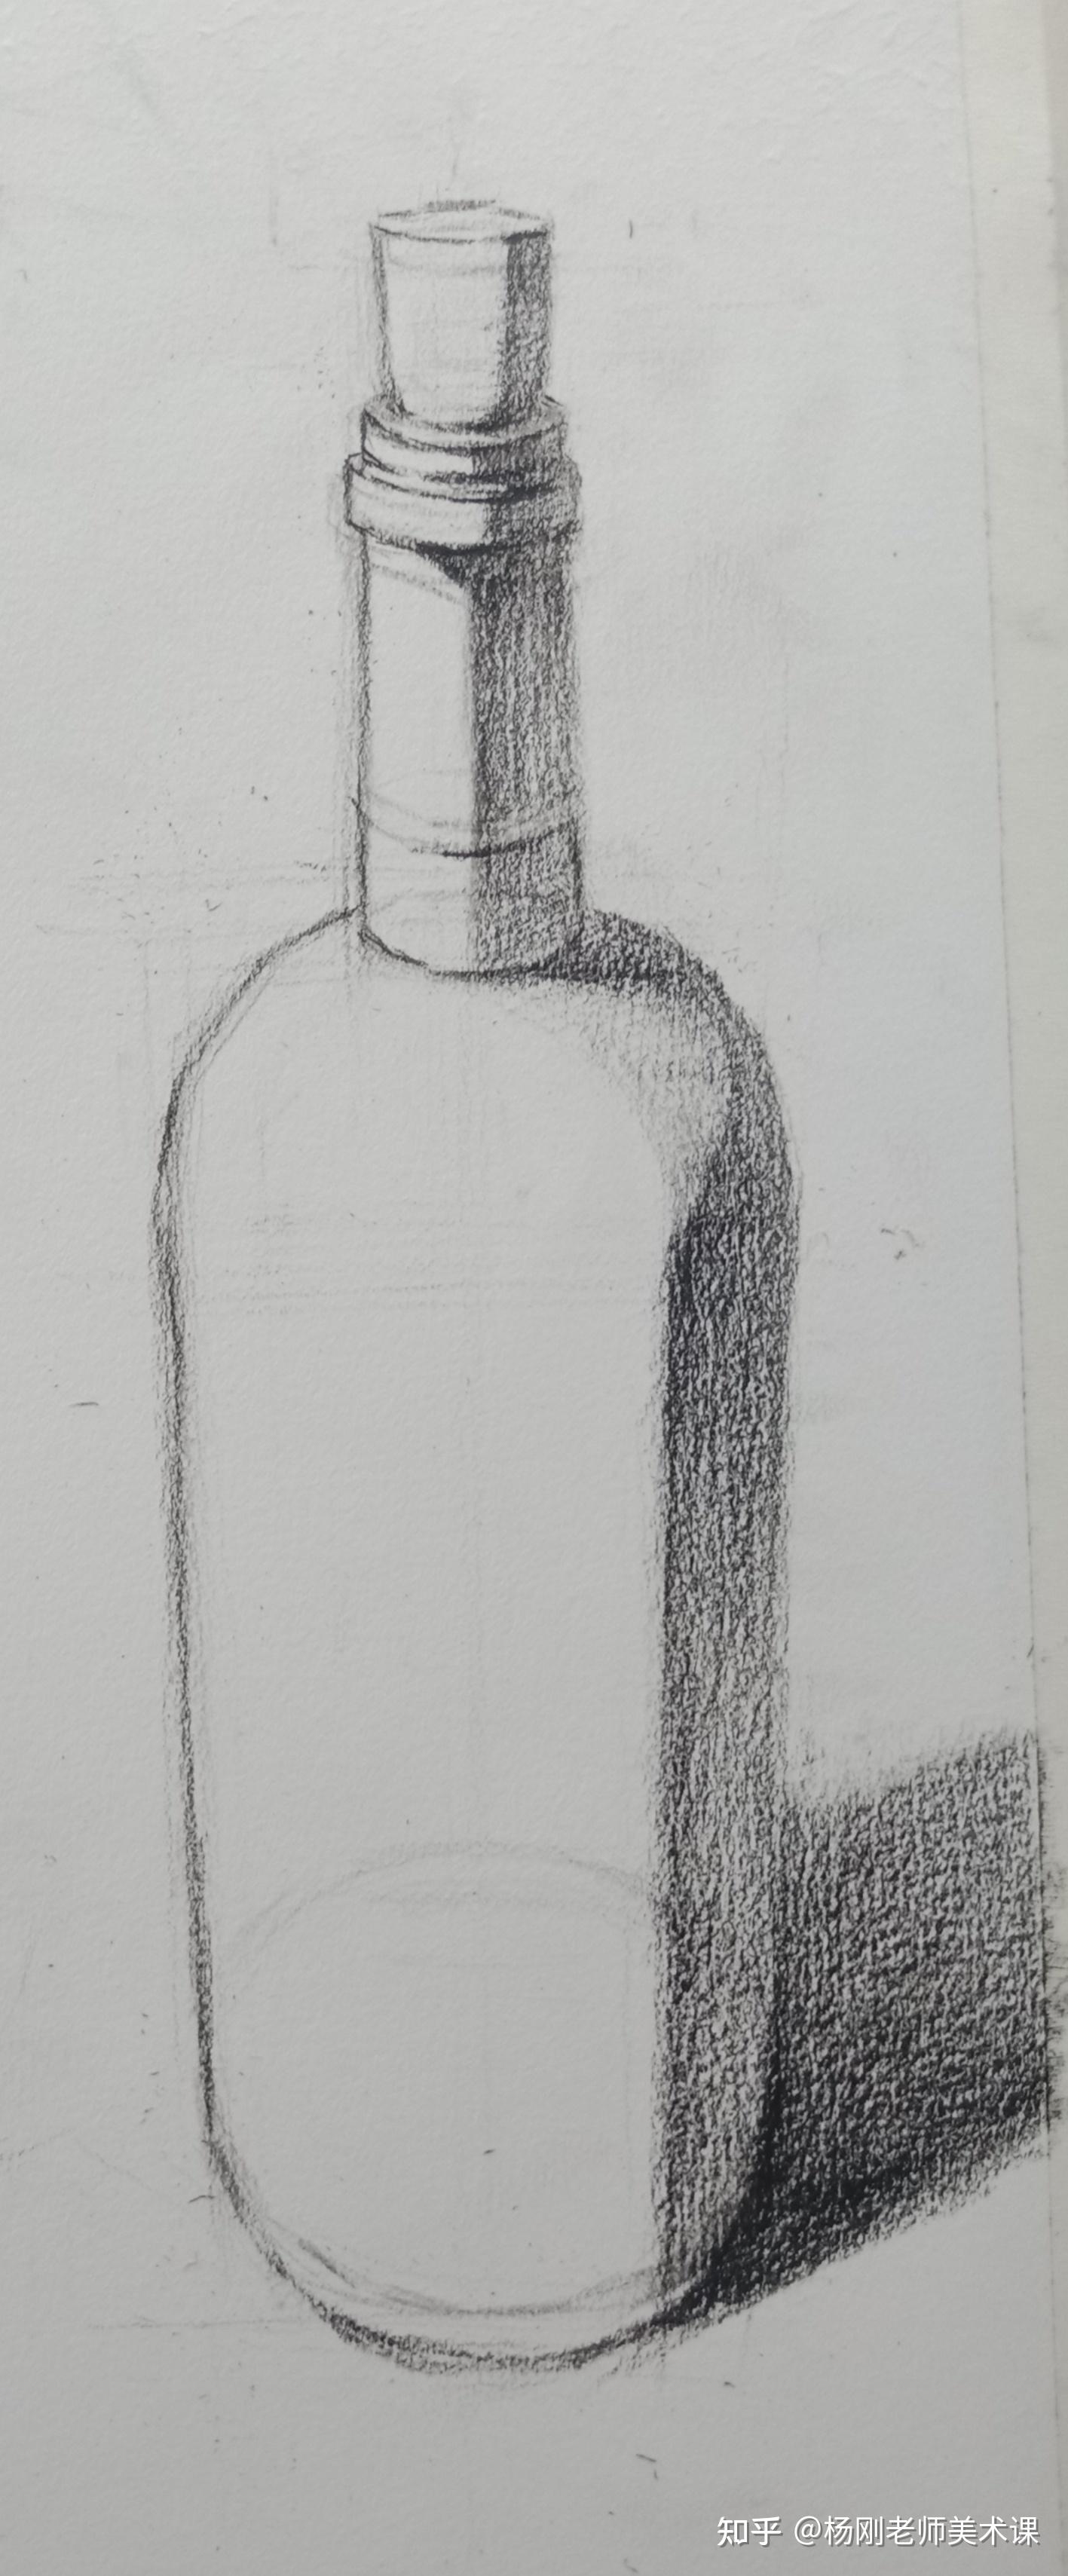 瓶子创意素描图片